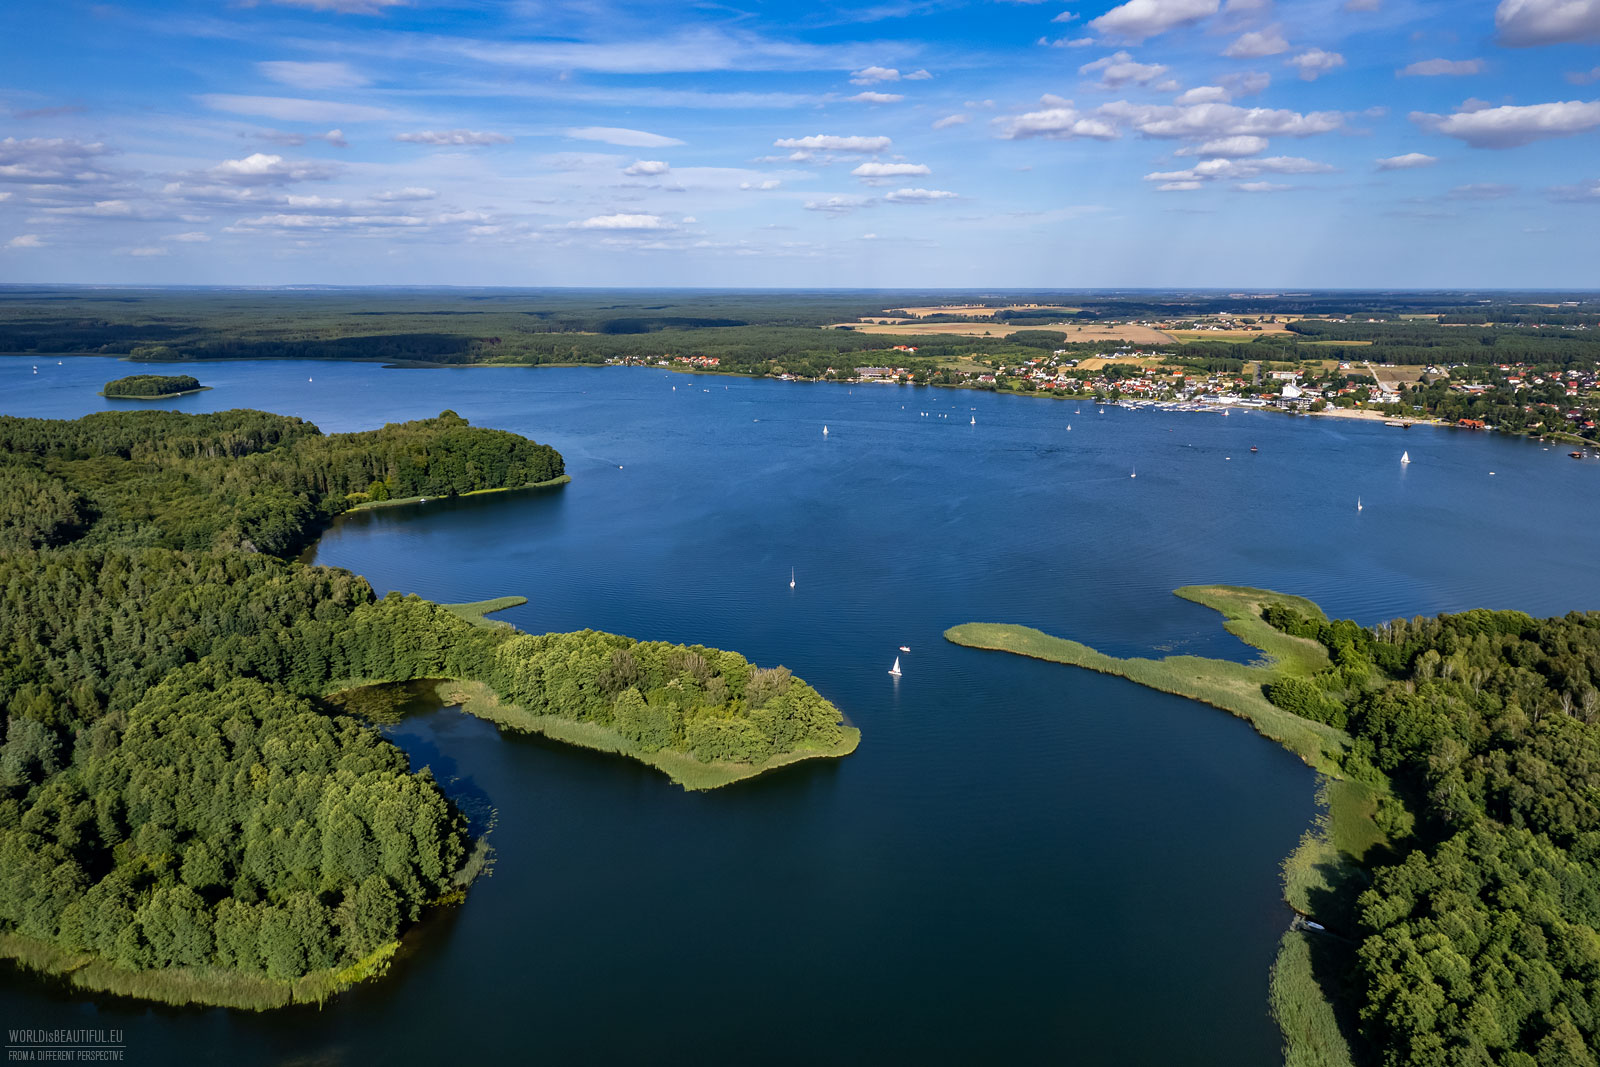 Charzykowy and Lake Charzykowskie